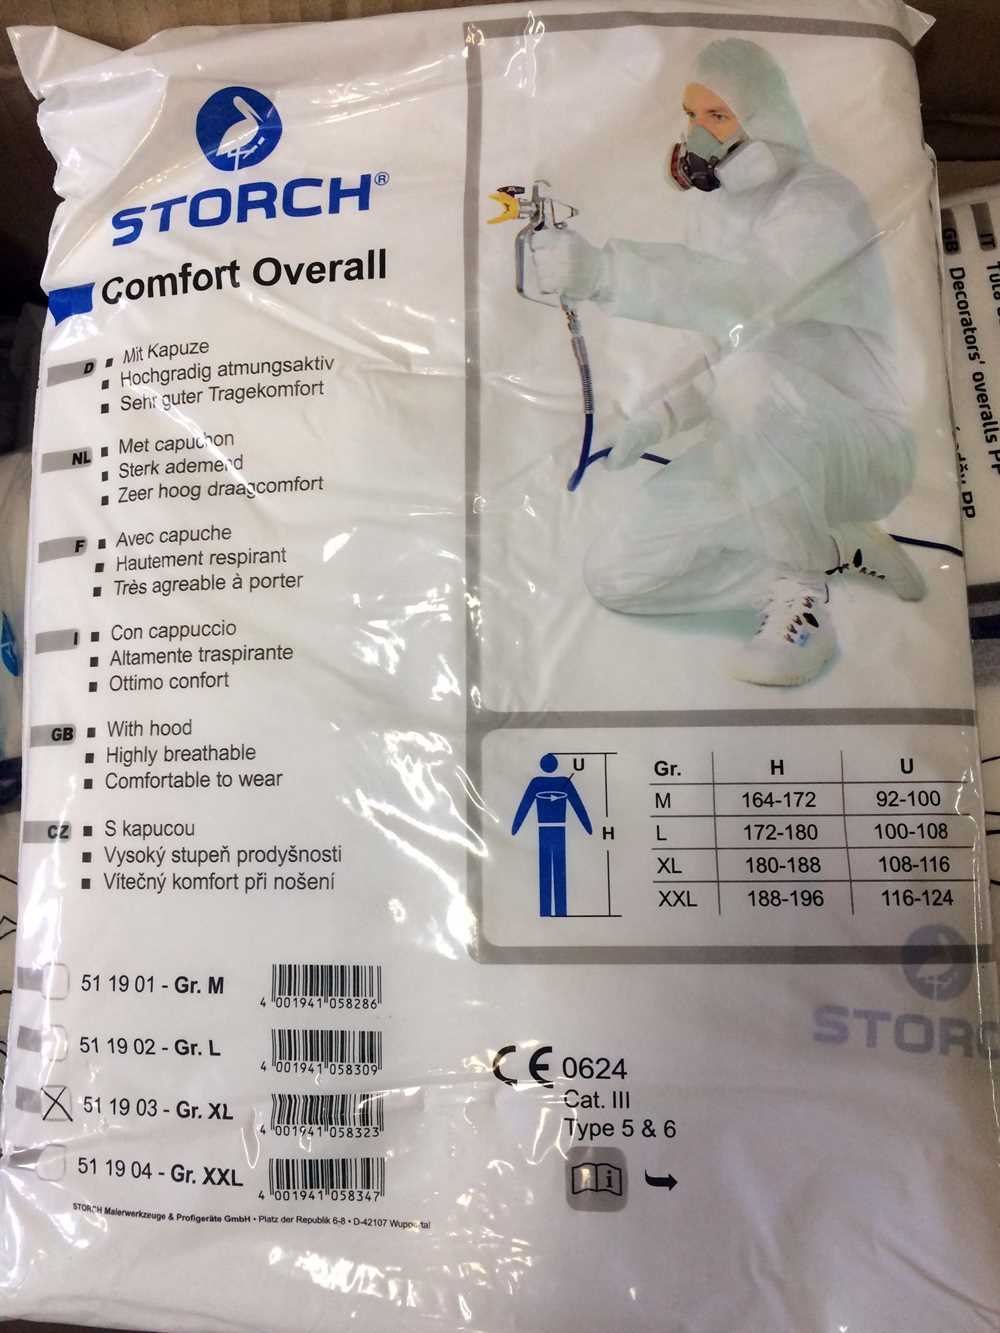 Купить Комбинезон малярный Comfort Storch XL, защитный, полипропилен недорого